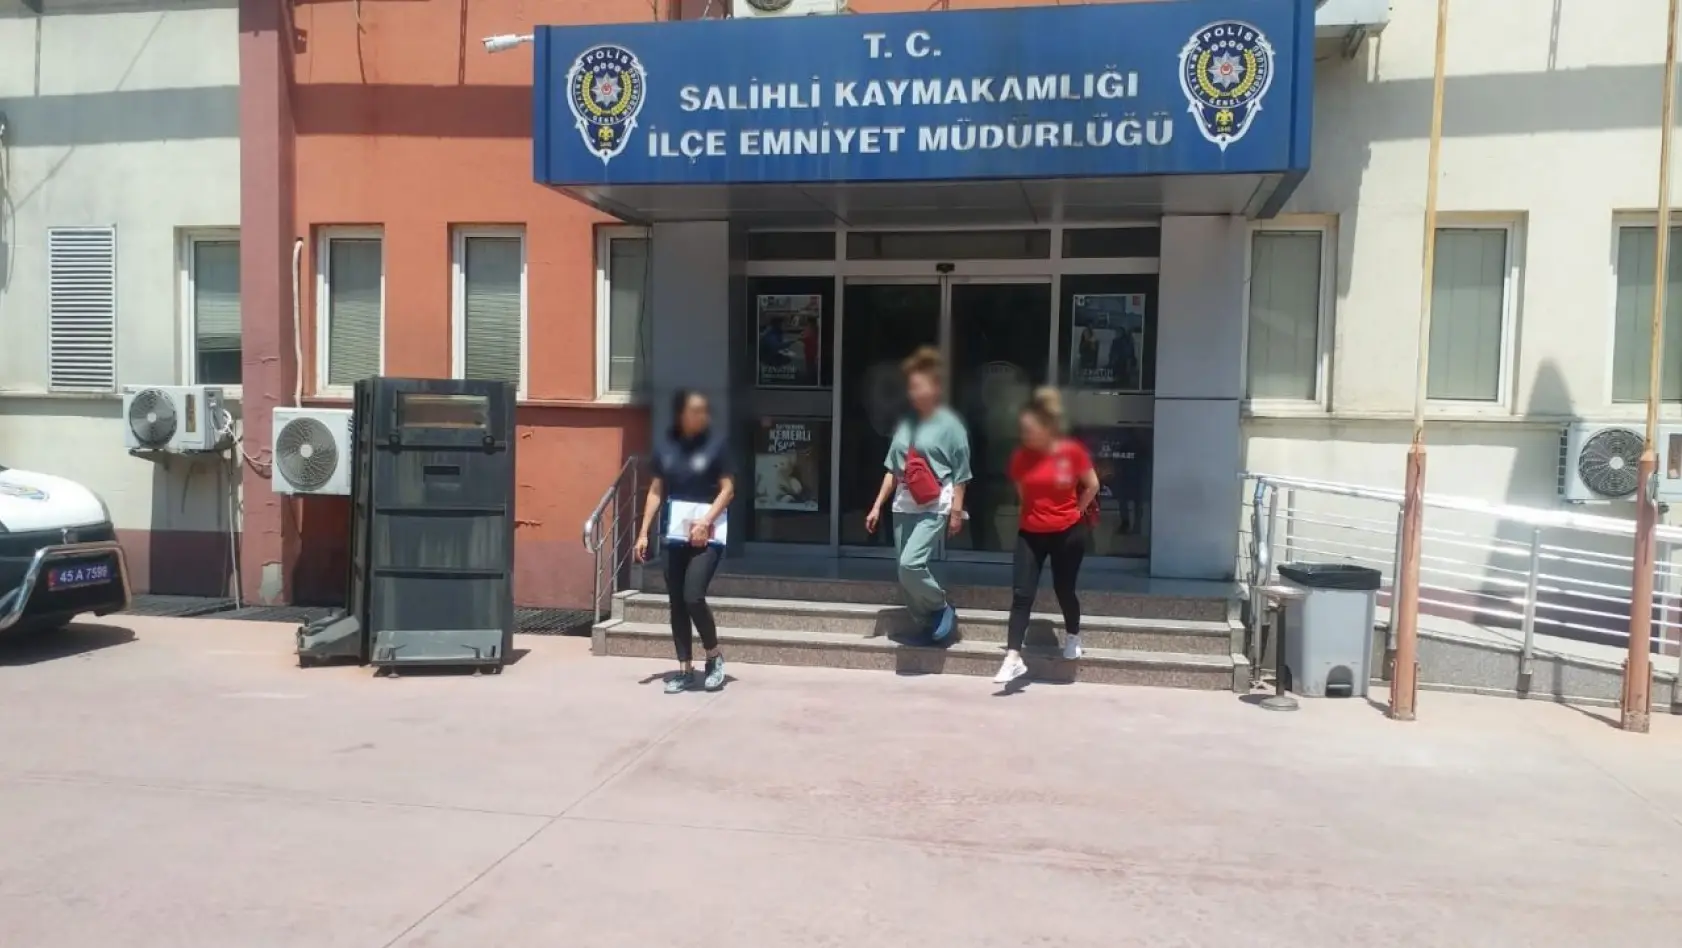 Manisa'da fuhuş operasyonu: Kırgız uyruklu 2 kadın sınır dışı edildi